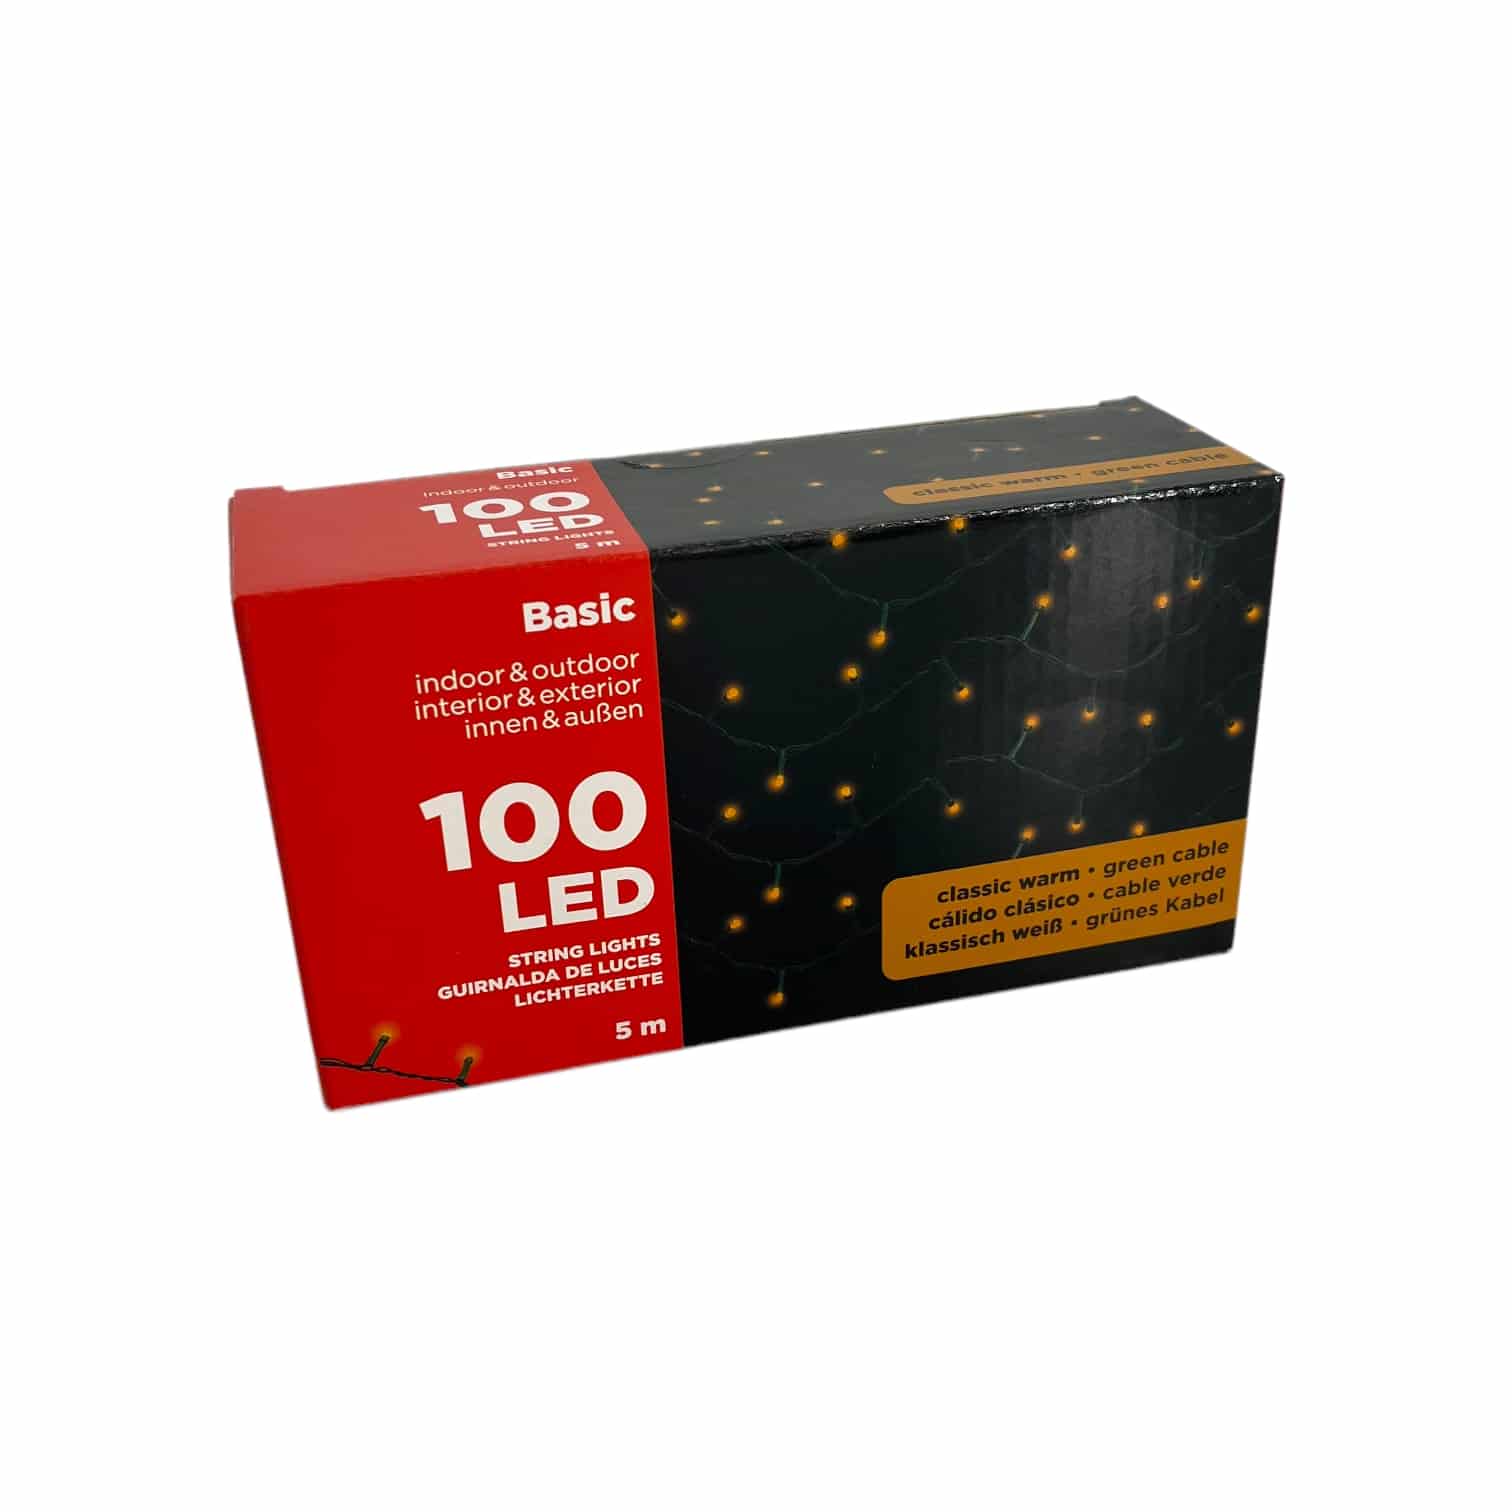 100 LED Basic Lichterkette - klassisch warmweiß